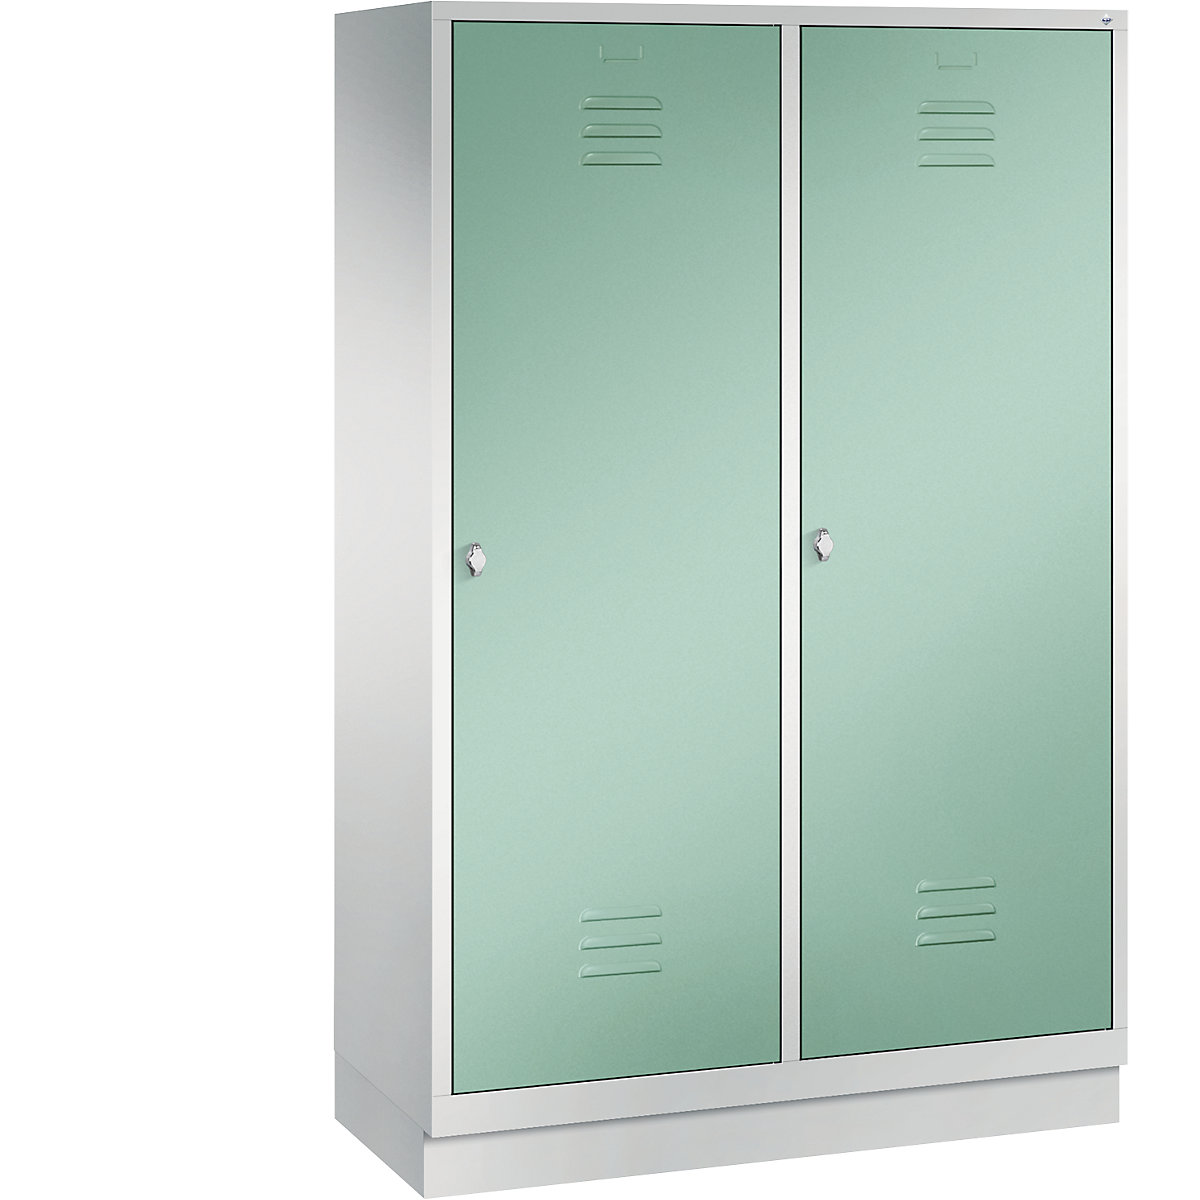 Šatní skříň se soklem CLASSIC s dveřmi přes 2 oddíly – C+P, 4 oddíly, šířka oddílu 300 mm, světlá šedá / světlá zelená